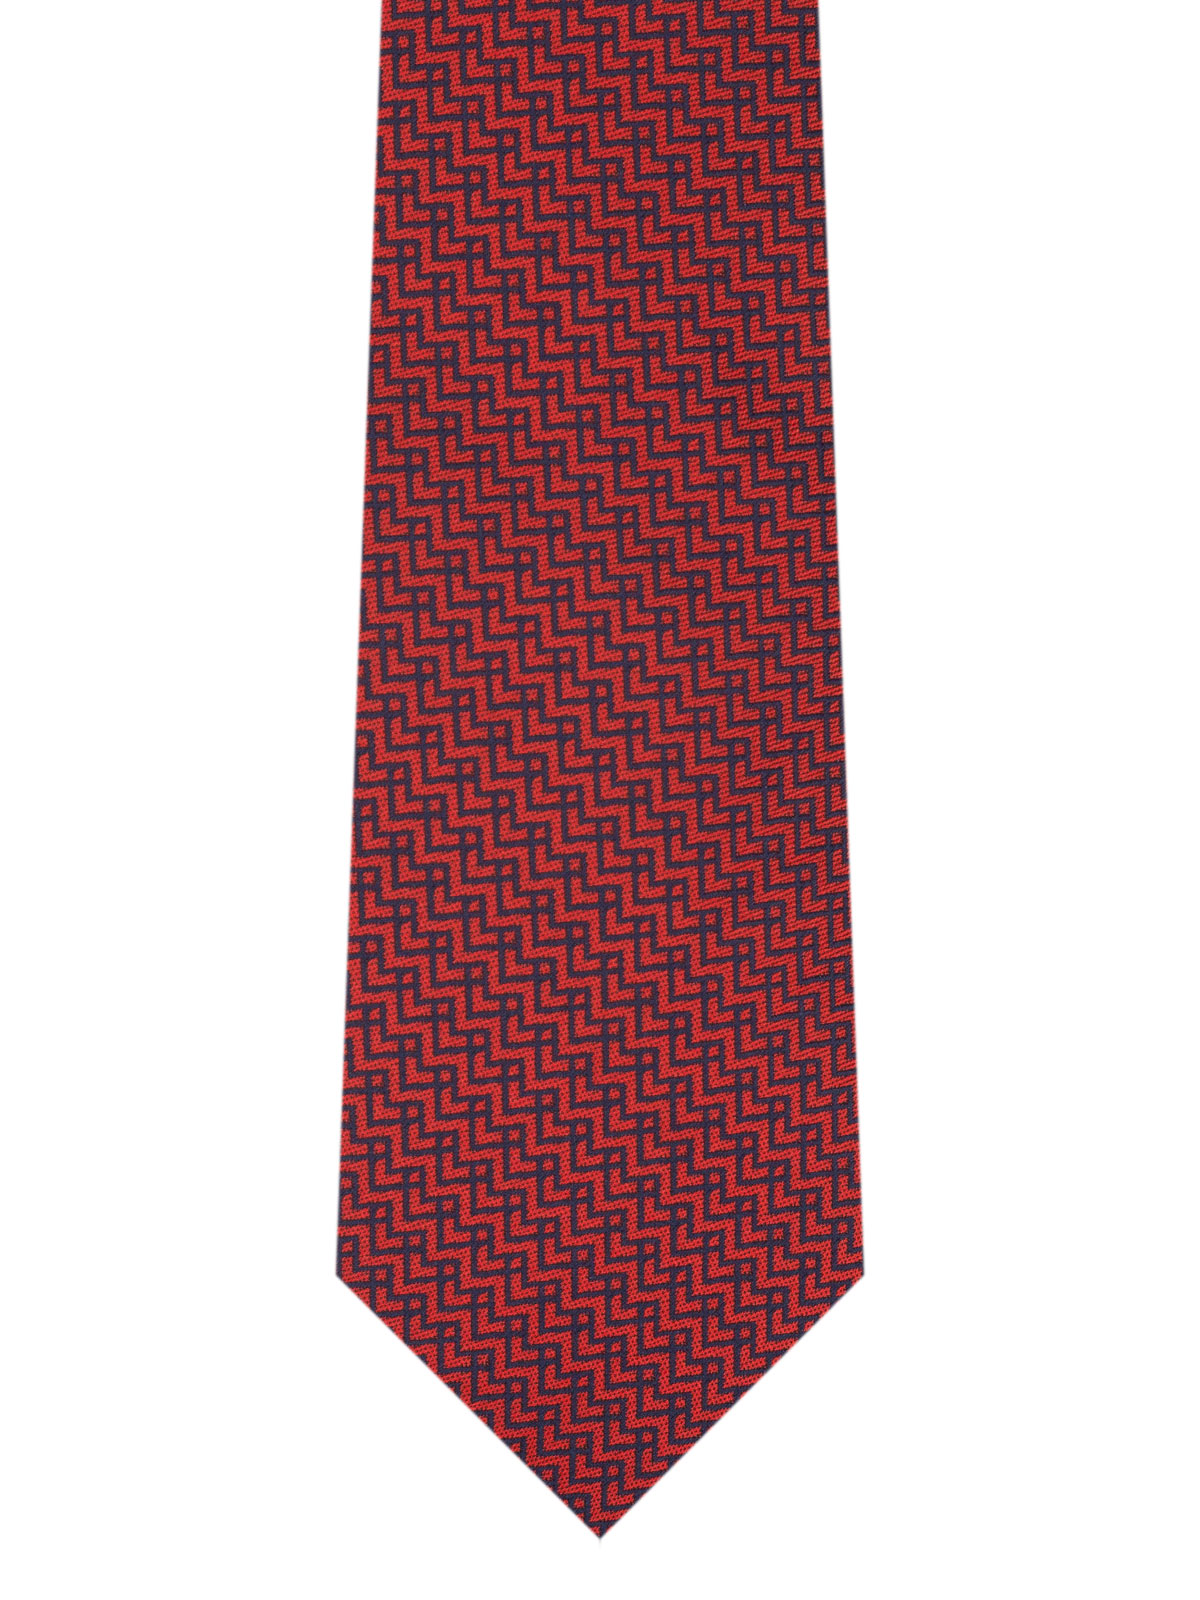 Червена вратовръзка на сини зигзаг лини - 10187 - 25.00 лв img2